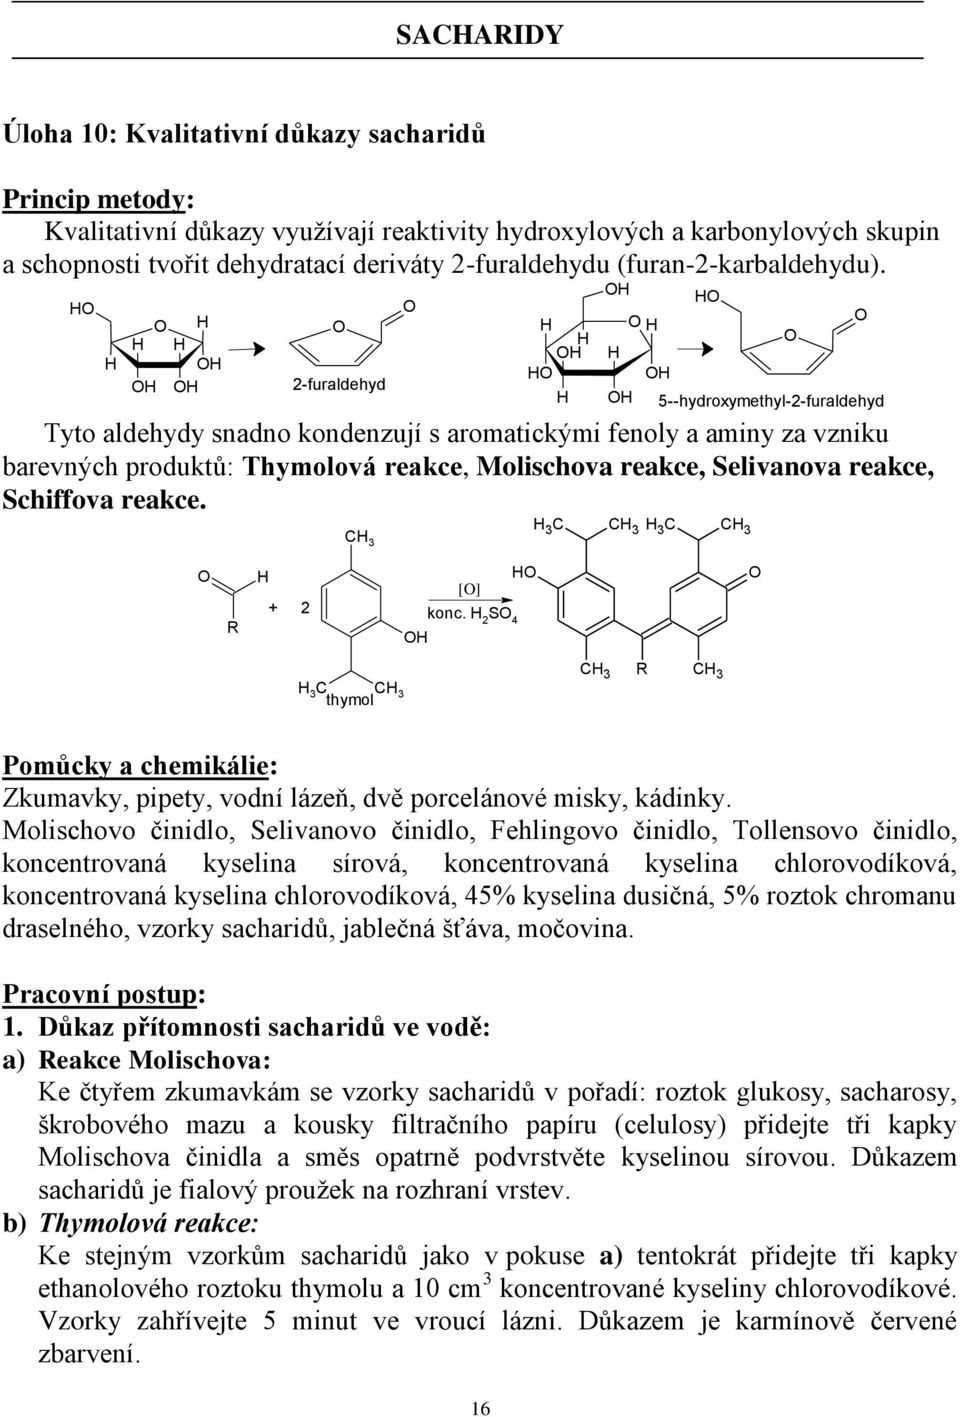 HO H O H H H OH OH OH O 2-furaldehyd O H H OH HO H OH H OH O H OH HO O O 5--hydroxymethyl-2-furaldehyd Tyto aldehydy snadno kondenzují s aromatickými fenoly a aminy za vzniku barevných produktů: